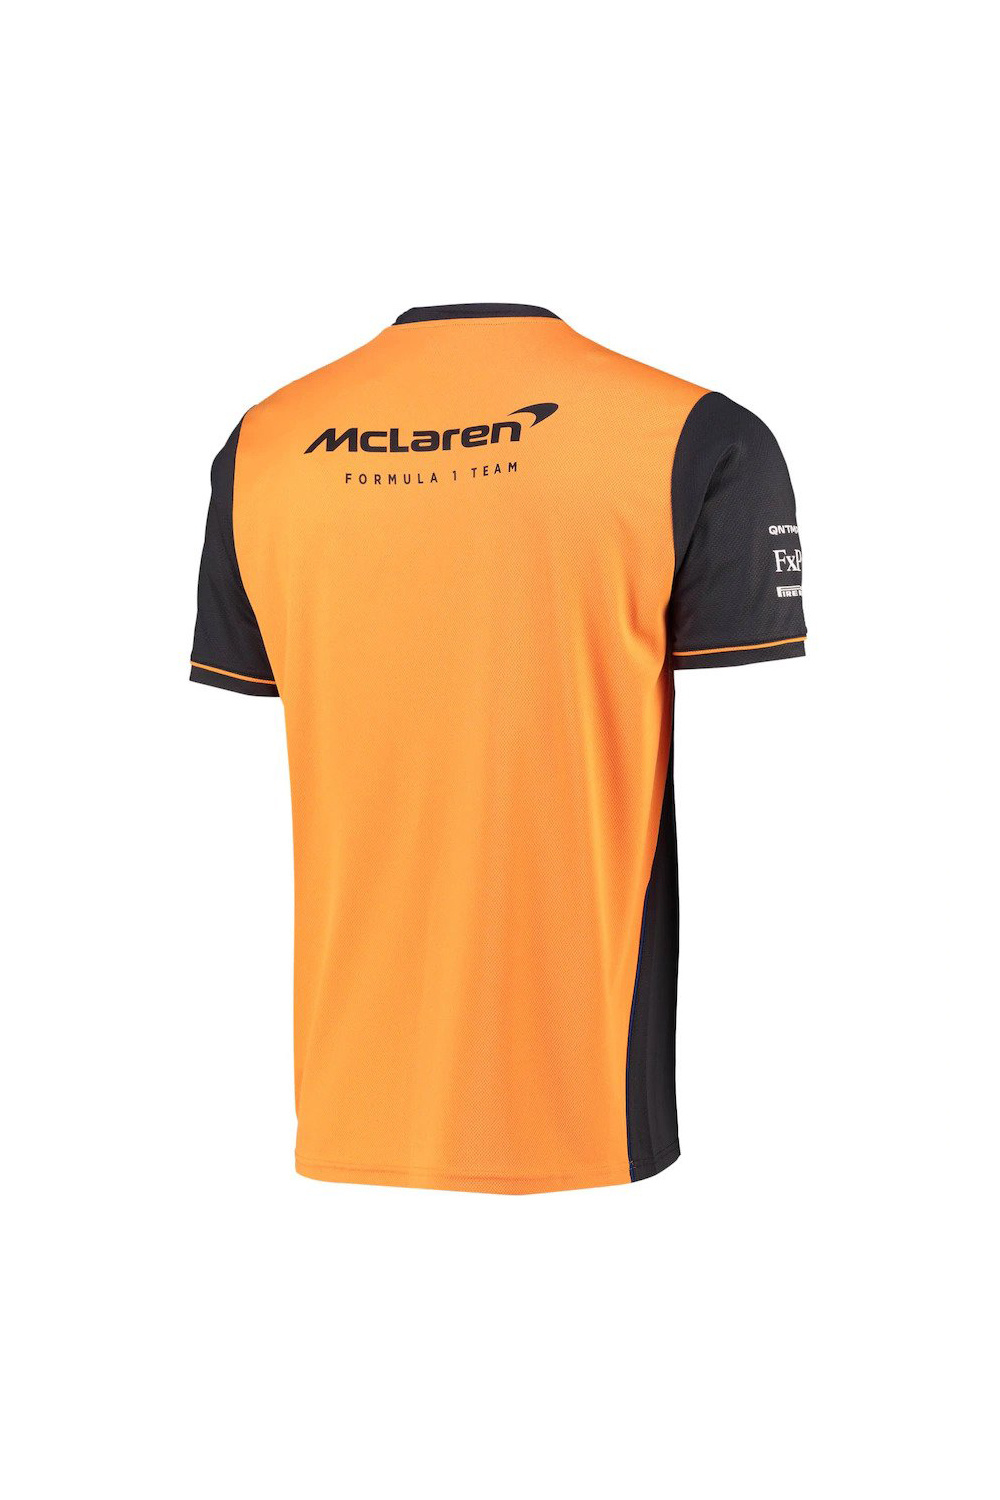 McLaren Heren Team Set Up T-Shirt Grijs Oranje 2022